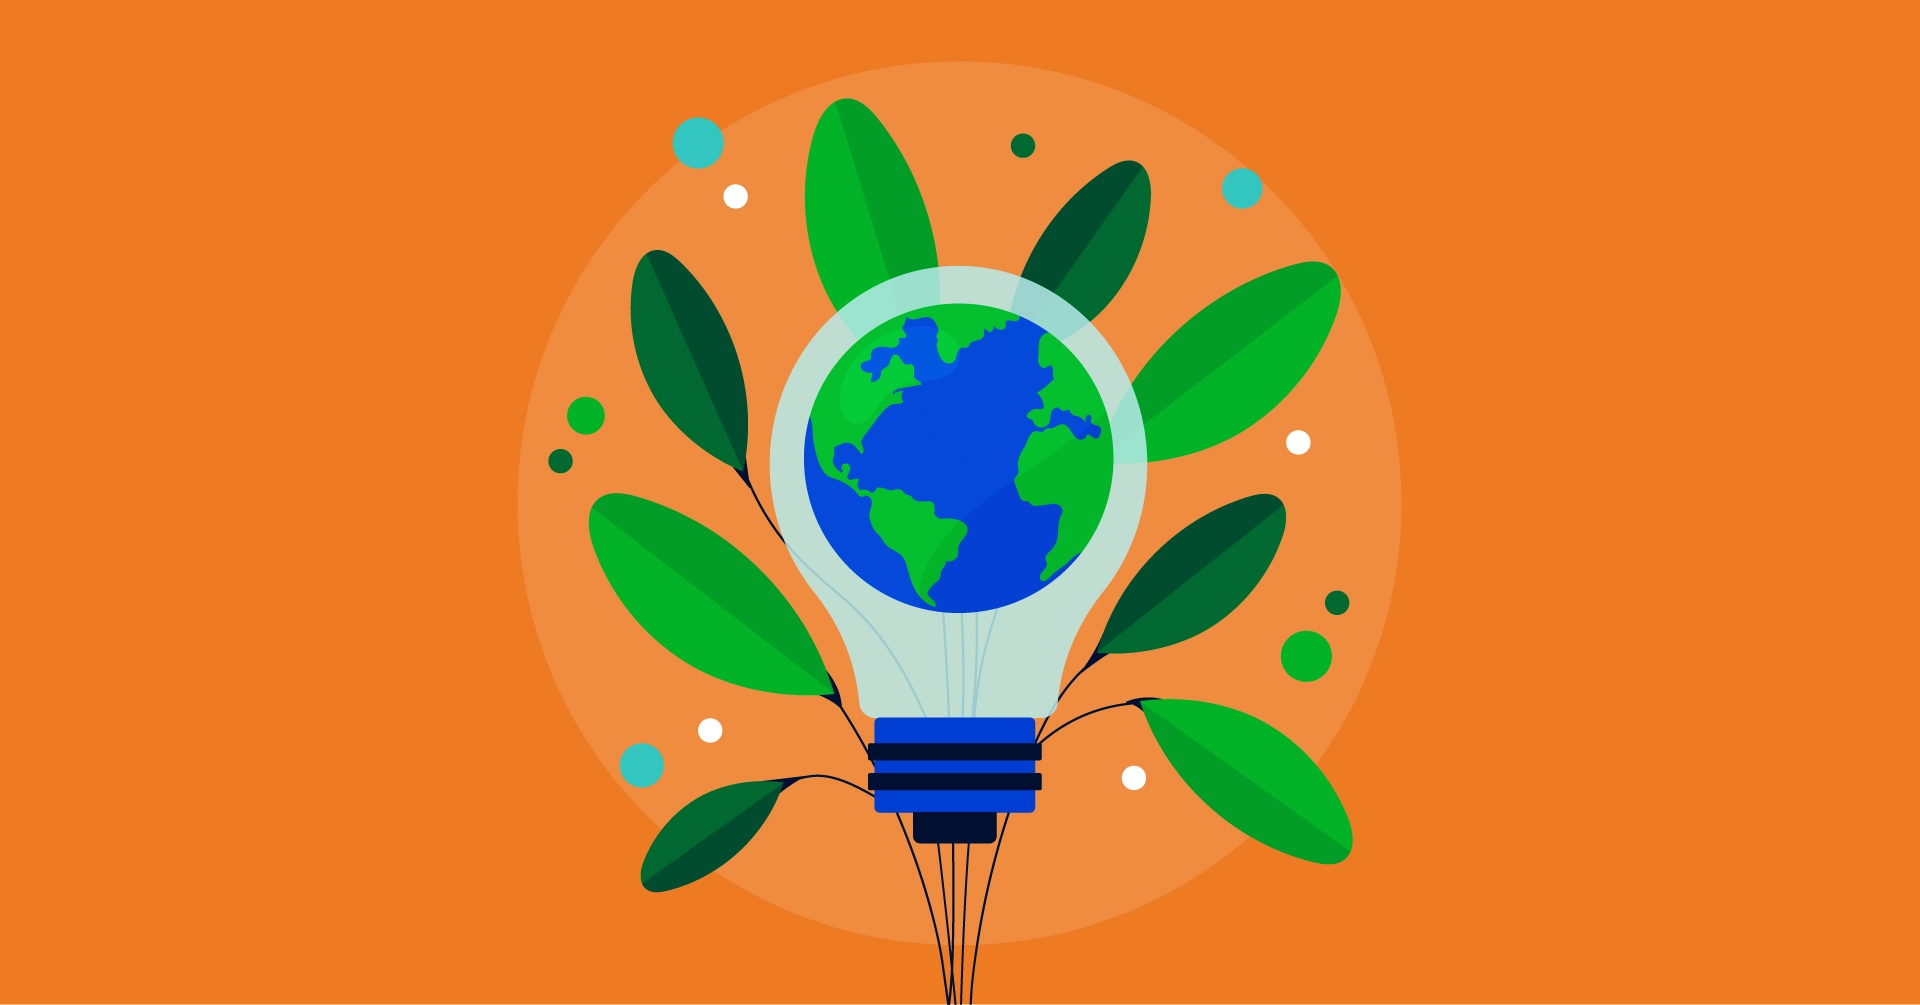 Panneau Photovoltaïque : solution écologique pour un avenir durable - Illustration